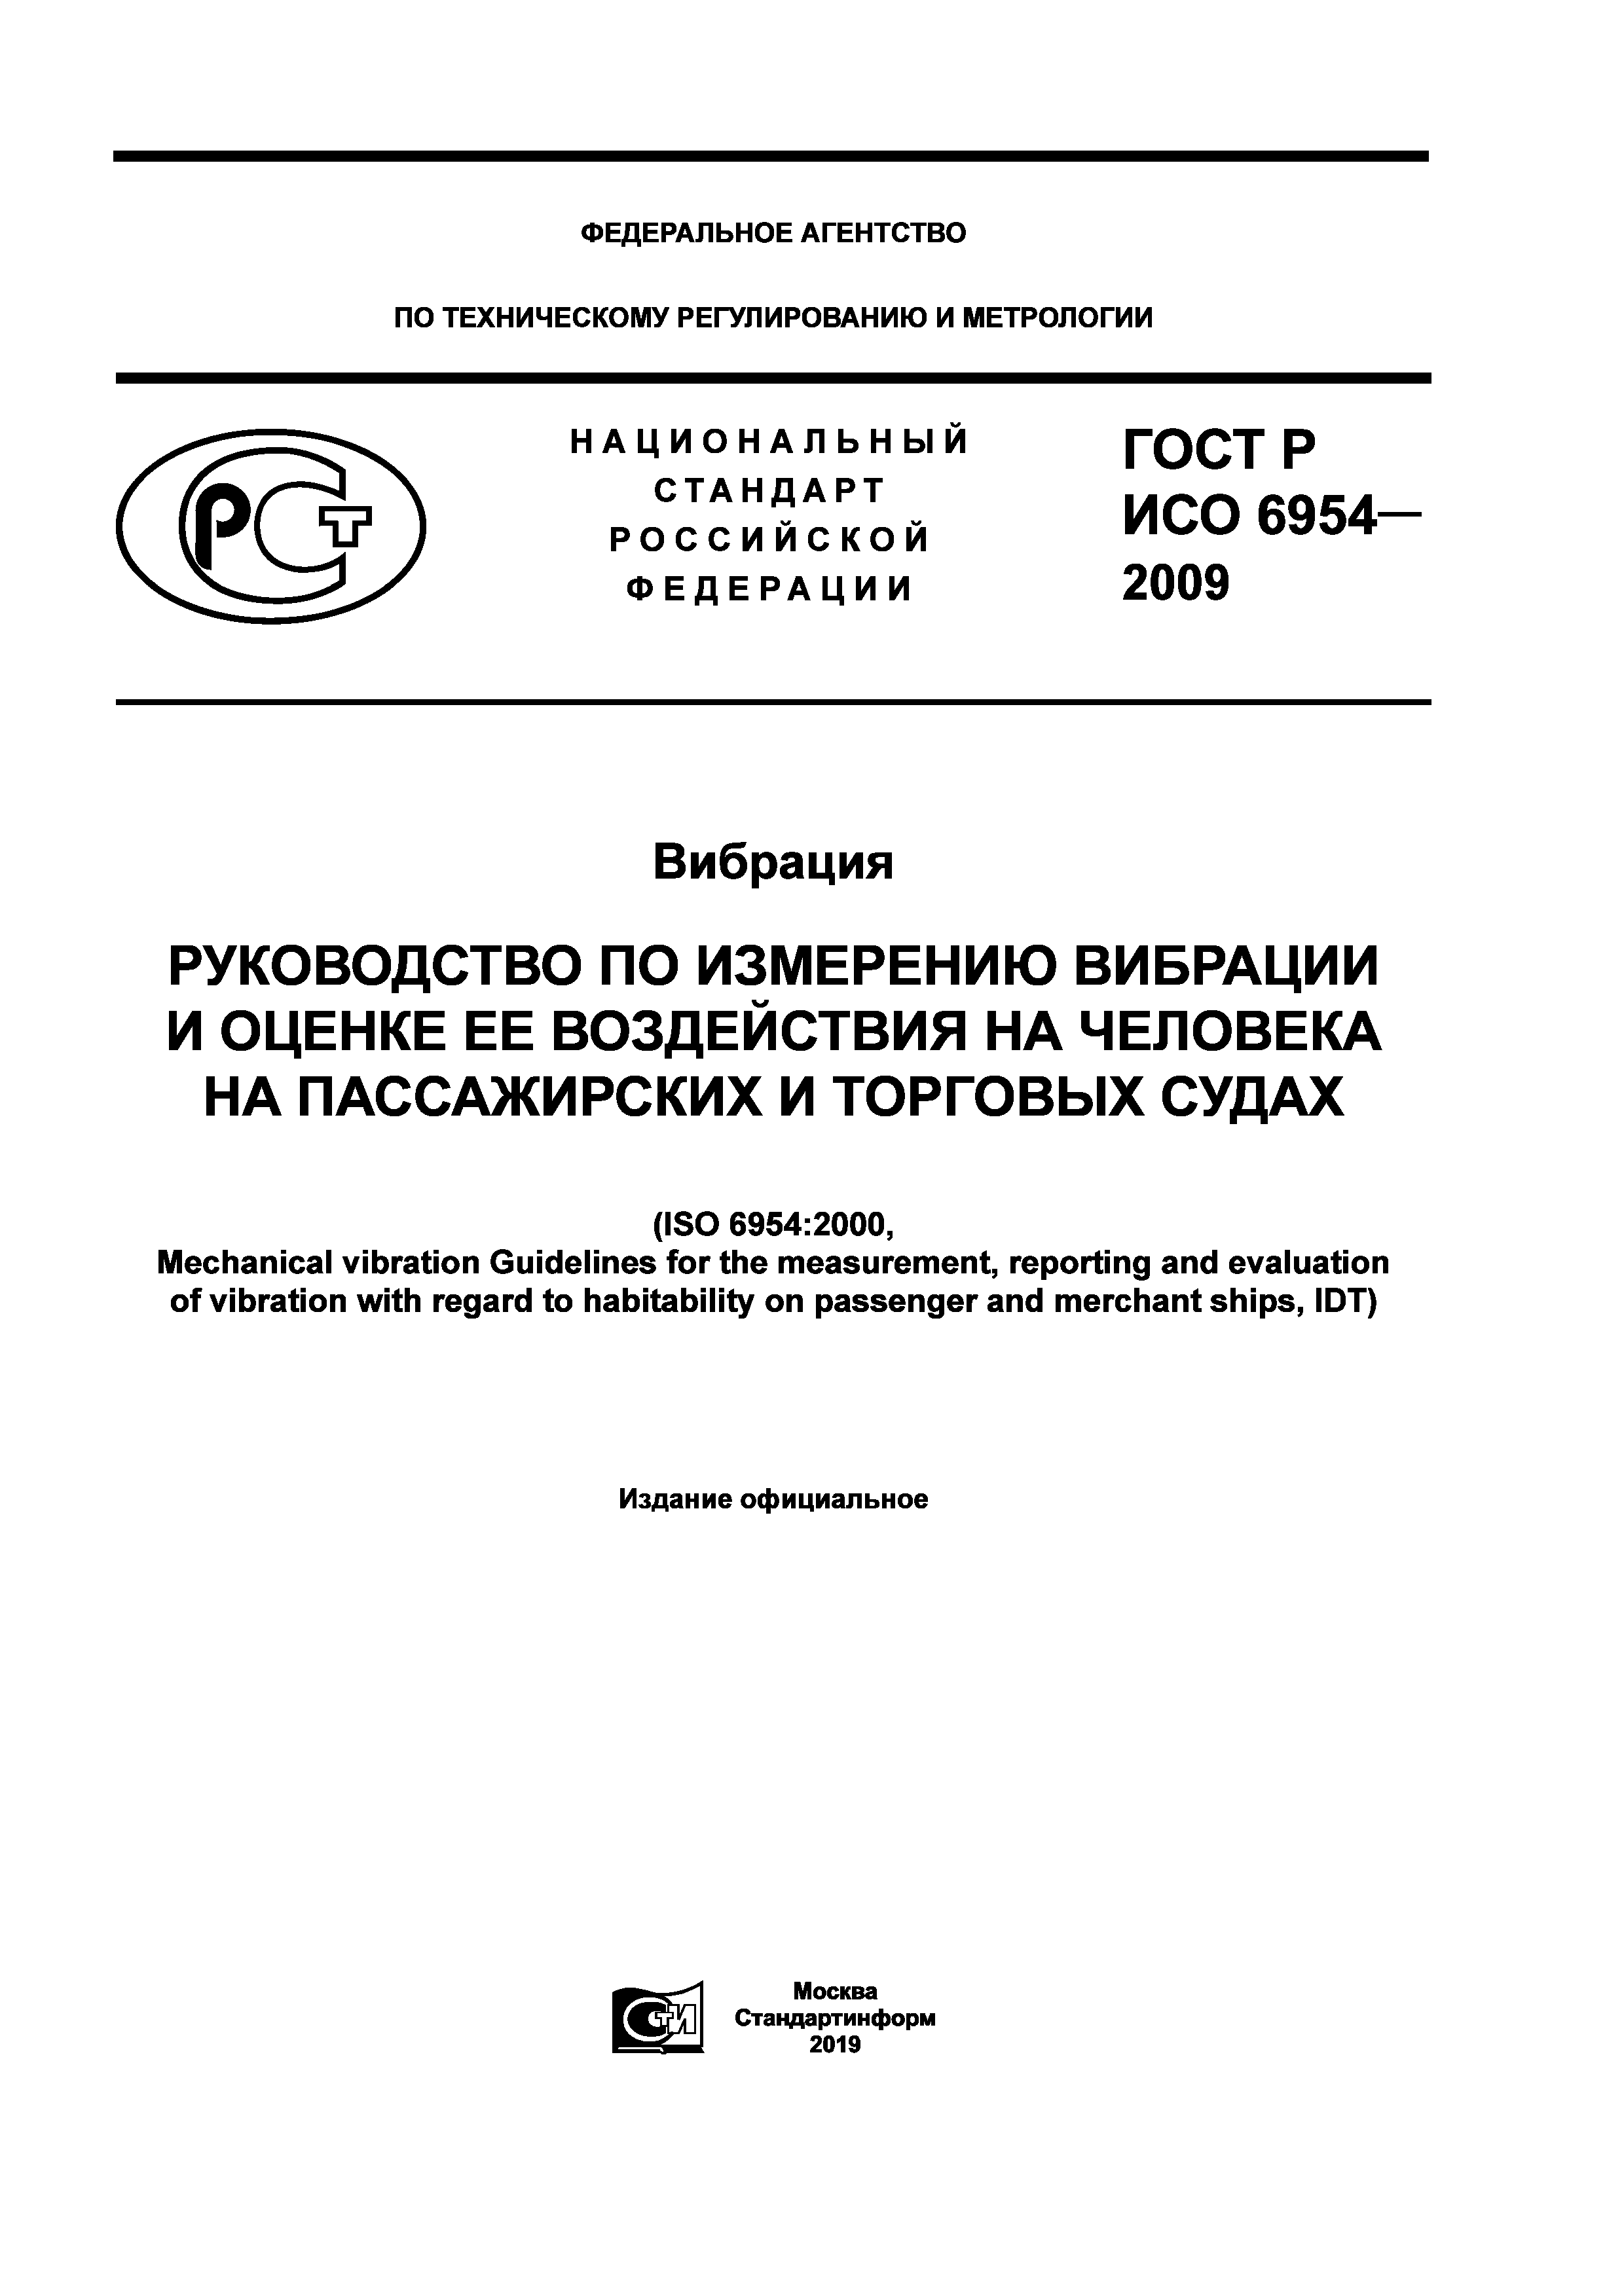 ГОСТ Р ИСО 6954-2009